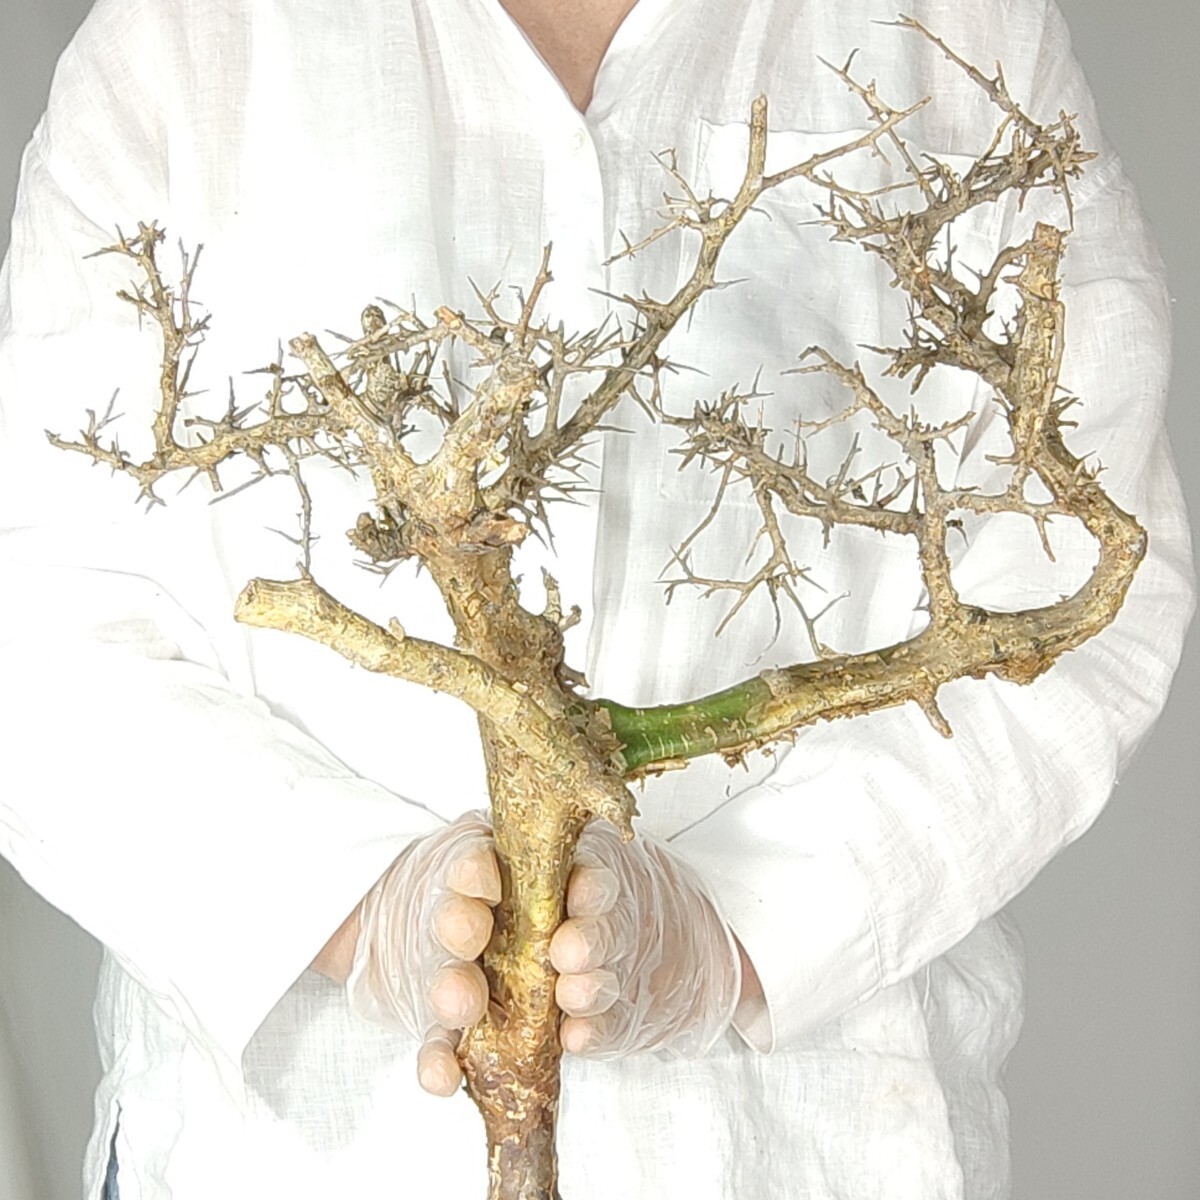 カンペストリス V030コミフォラ・カンペストリス 塊根植物 観葉植物 未発根 多肉植物 灌木 パキプス グラキリス 盆栽 アガベ コーデックスの画像4